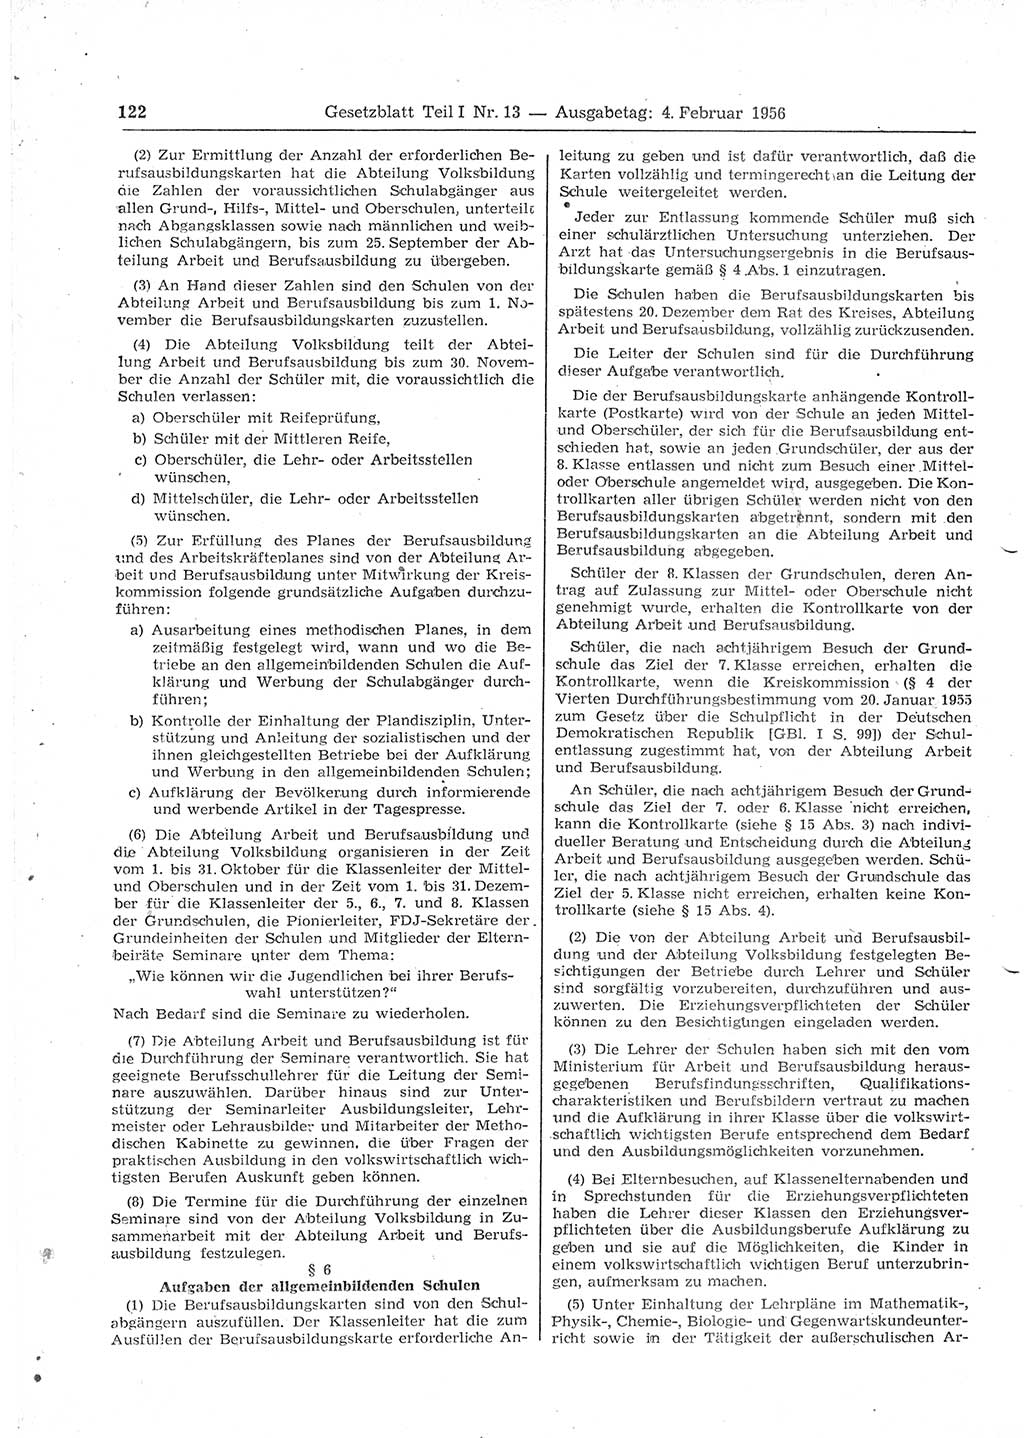 Gesetzblatt (GBl.) der Deutschen Demokratischen Republik (DDR) Teil Ⅰ 1956, Seite 122 (GBl. DDR Ⅰ 1956, S. 122)